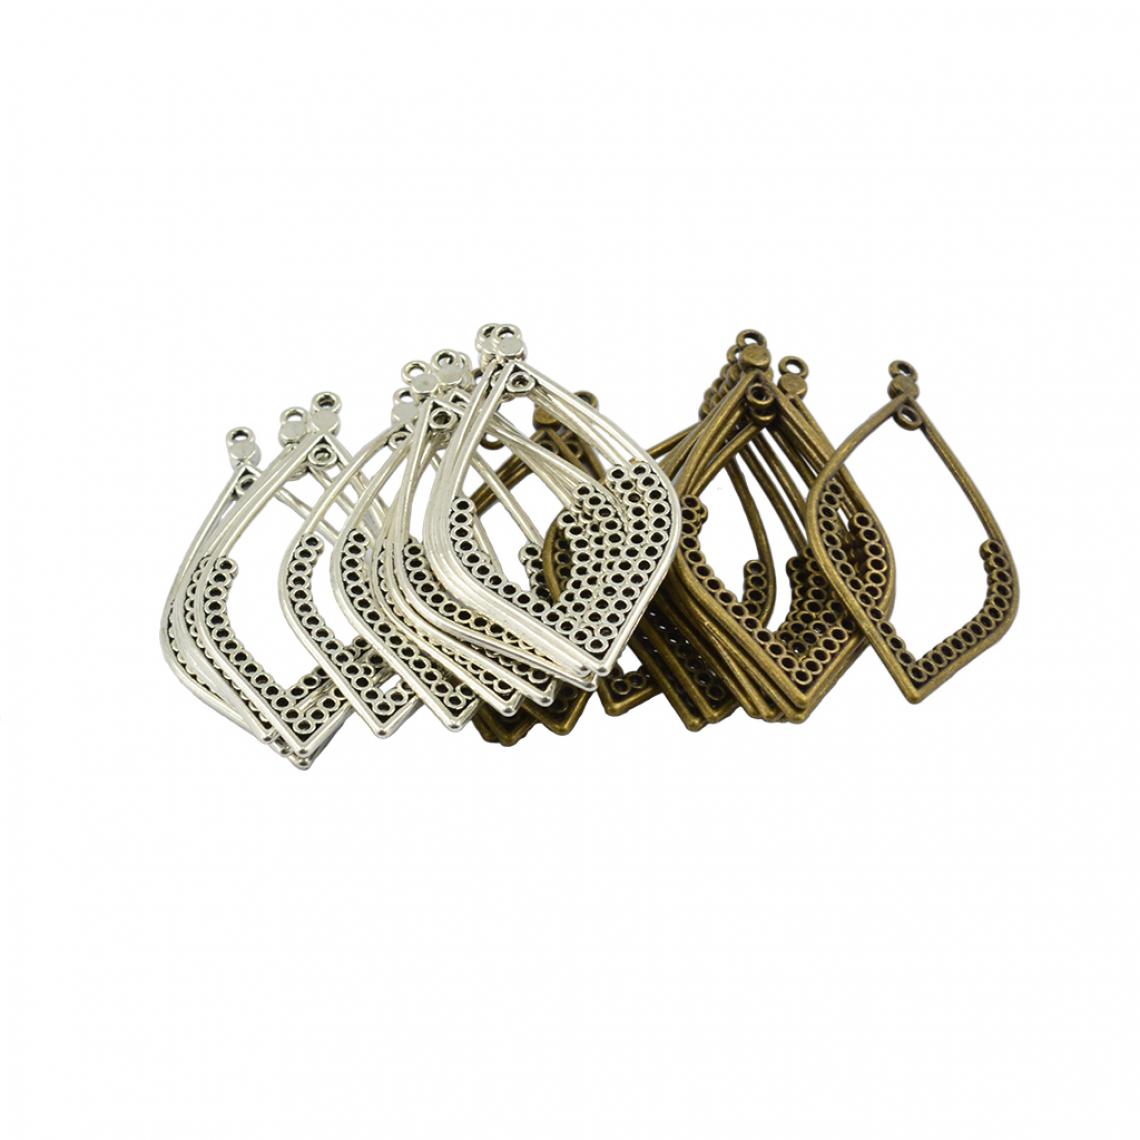 marque generique - 24pcs Pendentif Feuilles Ciselé pour Fabrication Boucle d'Oreille Collier Bracelet Loisirs Créatifs - Perles